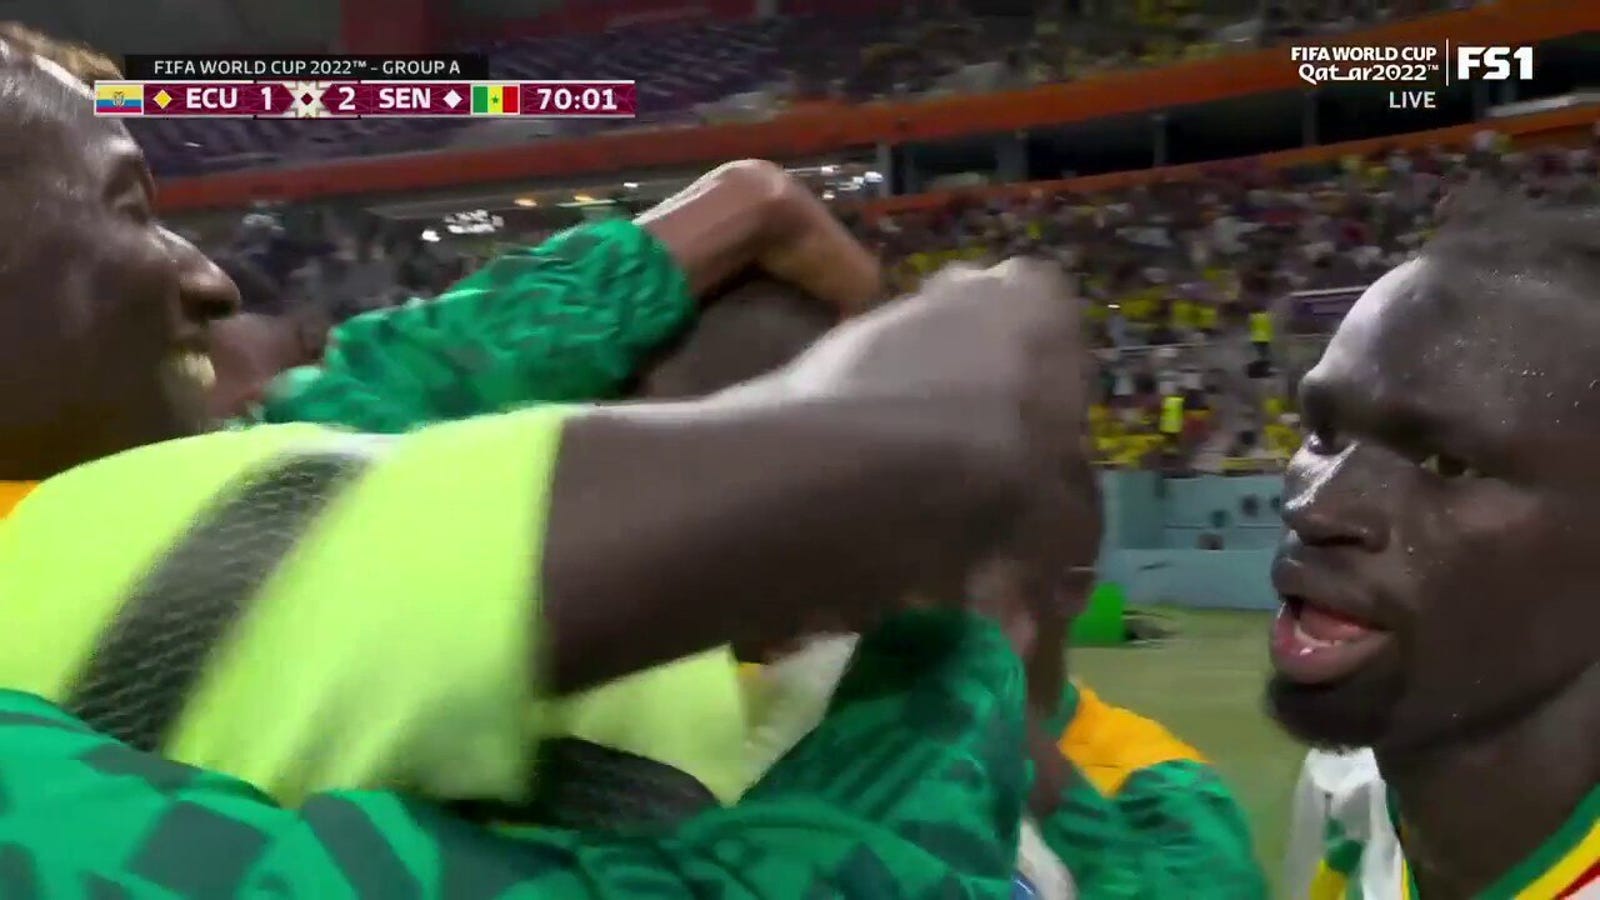 El senegalés Kalidou Coulibaly marca el gol contra Ecuador en el minuto 70 